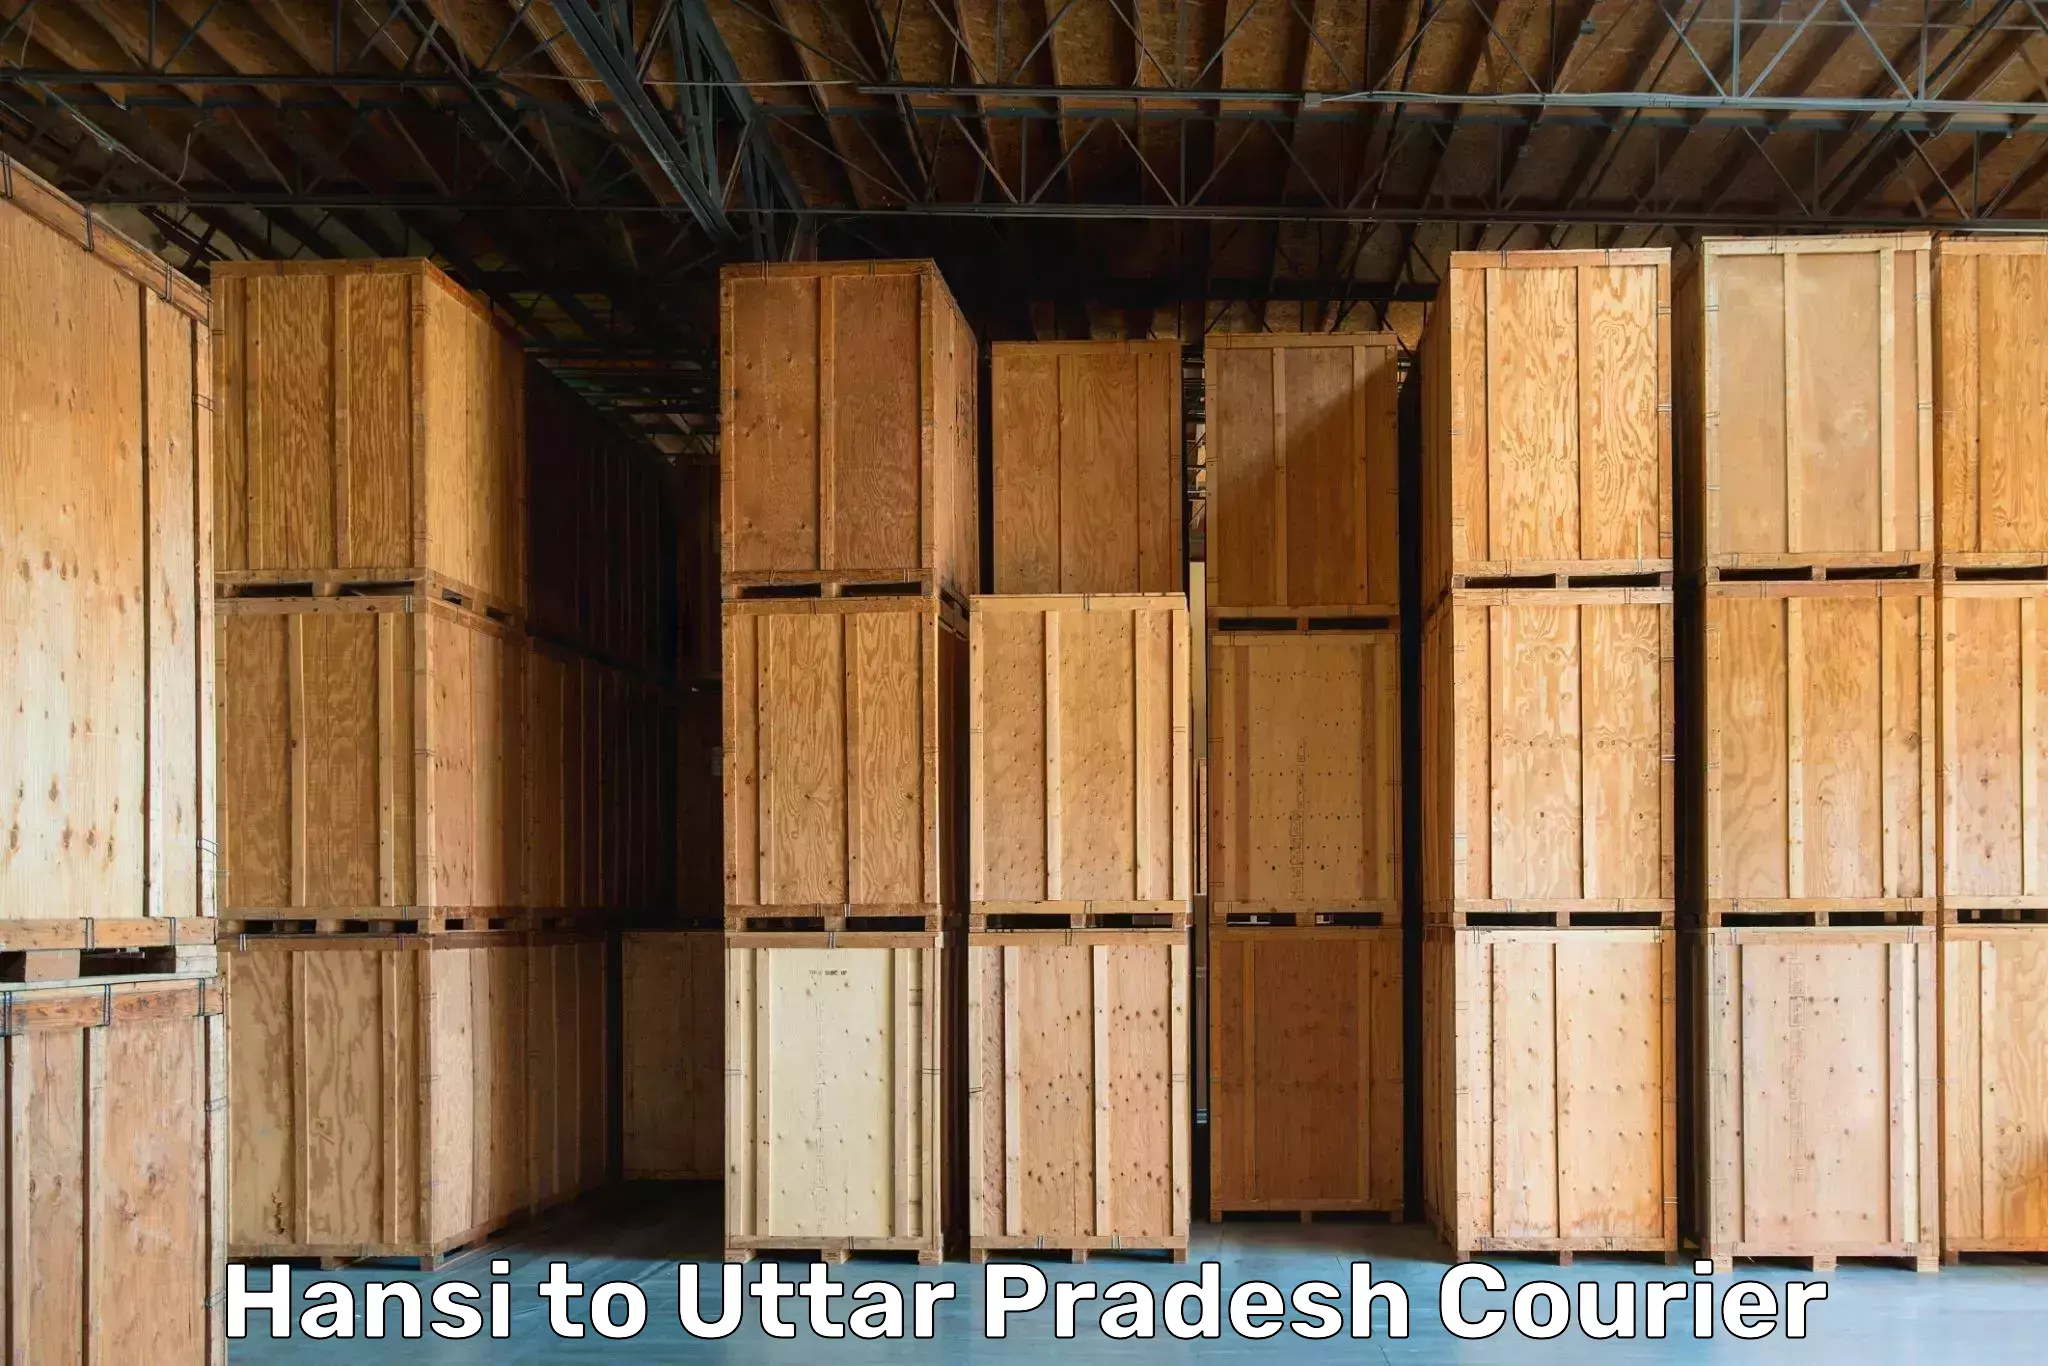 Trusted moving solutions Hansi to Uttar Pradesh